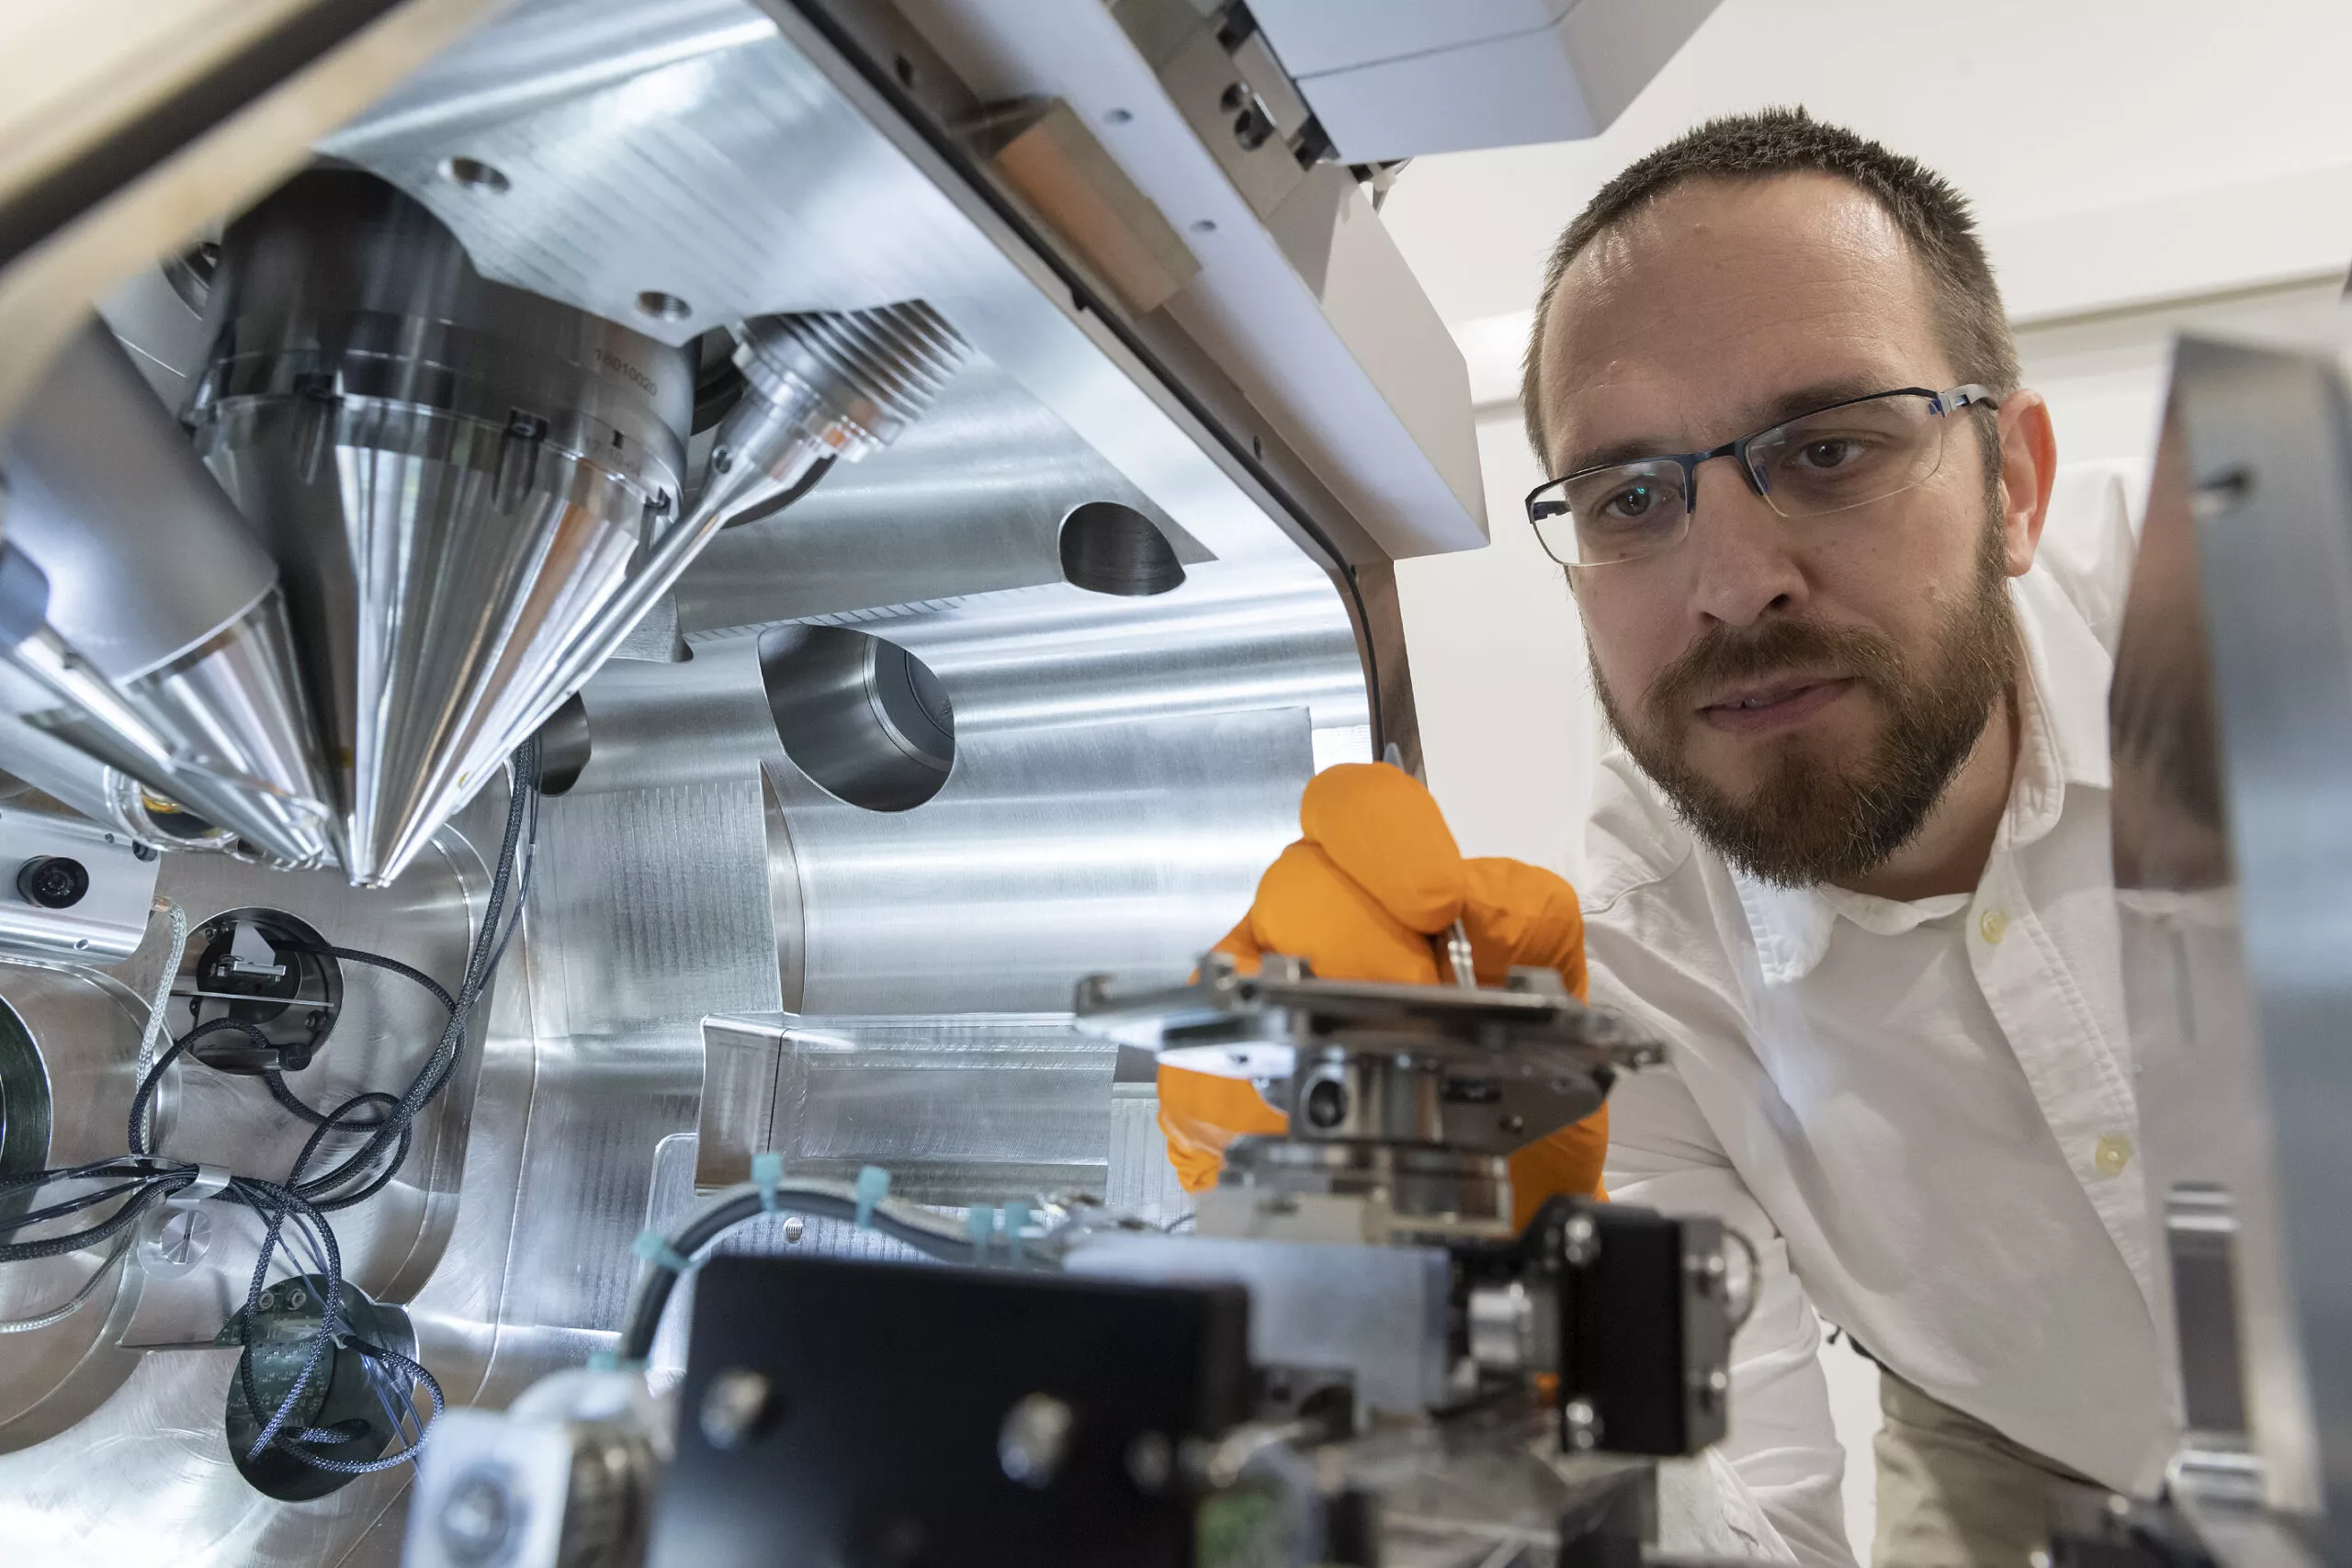 RADNOCZI_György_Zoltán , az ELKH Energiatudományi Kutatóközpontjában működő Vékonyréteg-Fizika osztályának kutatója elektronmikroszkópok felhasználásával végez kutatásokat. Kutatásaival hozzájárul a COVID - 19 járvány elleni védek